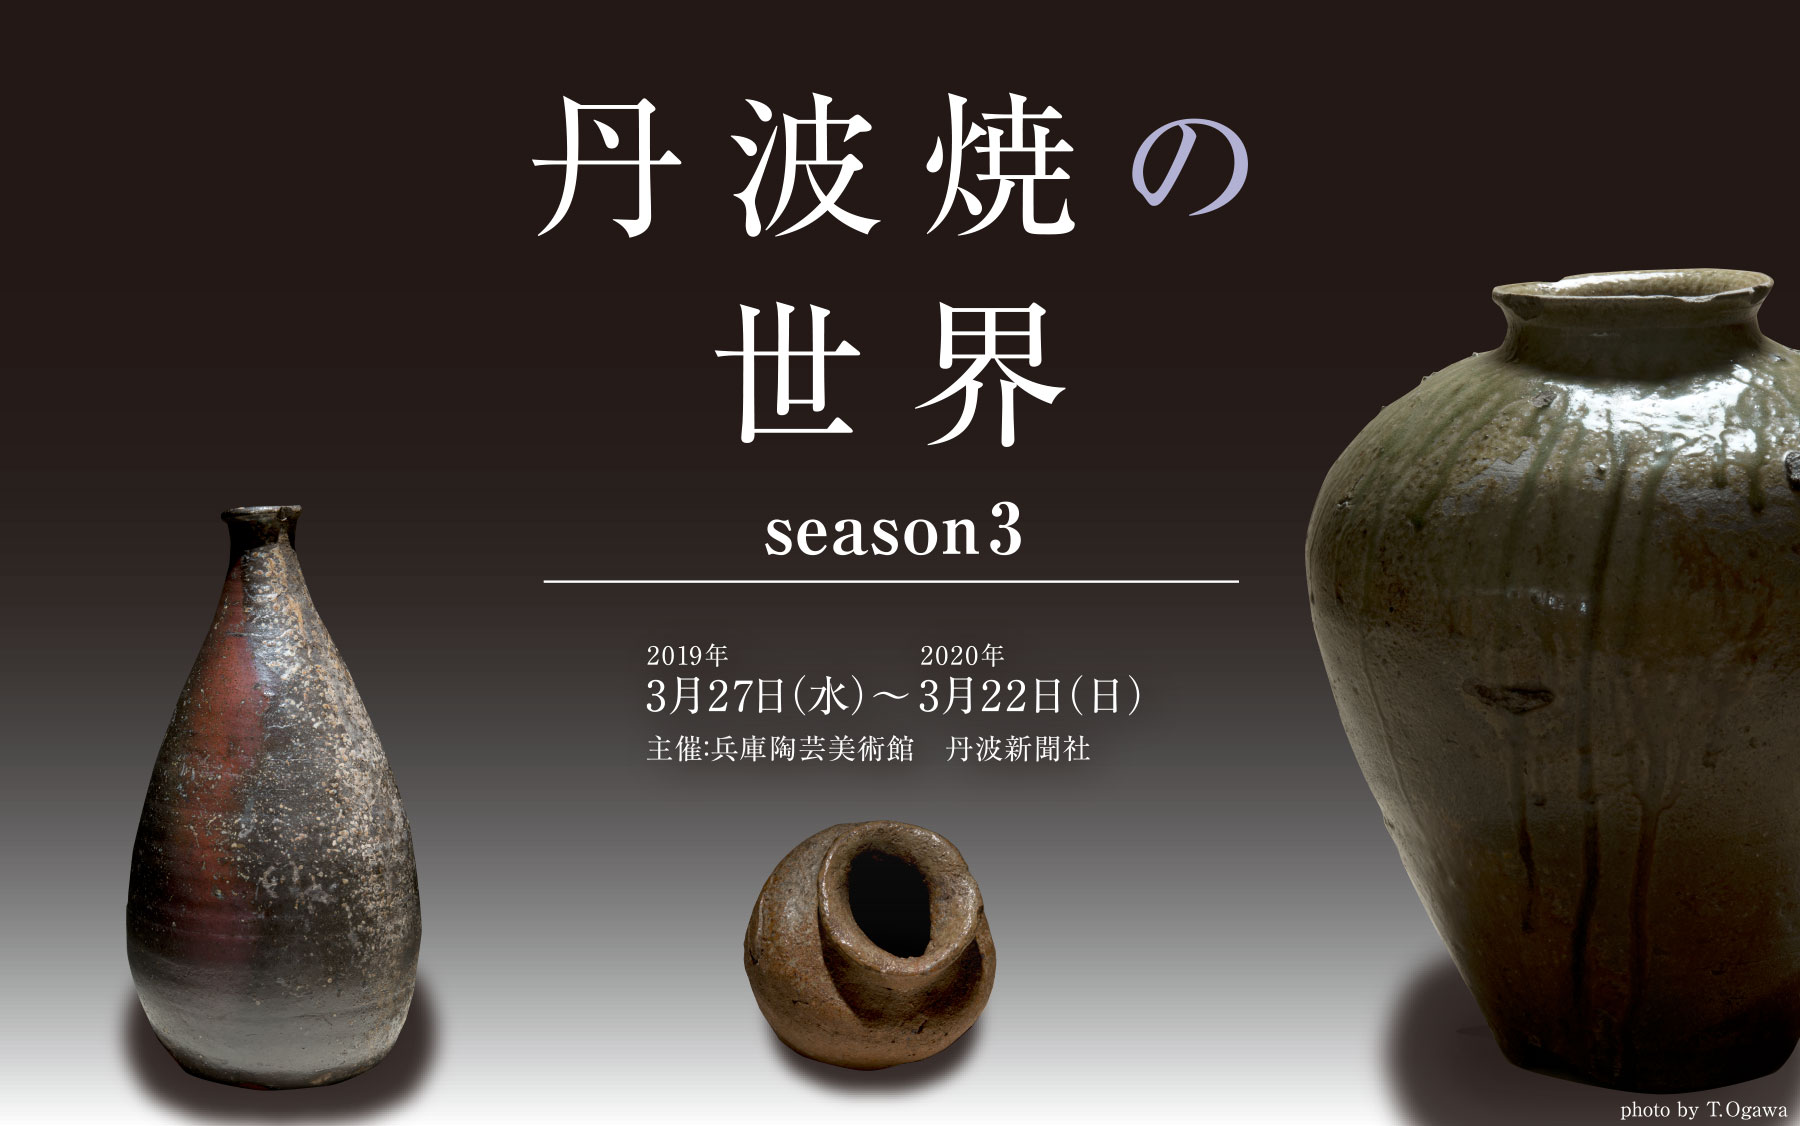 丹波焼の世界 season3 - 兵庫陶芸美術館 The Museum of Ceramic Art, Hyogo